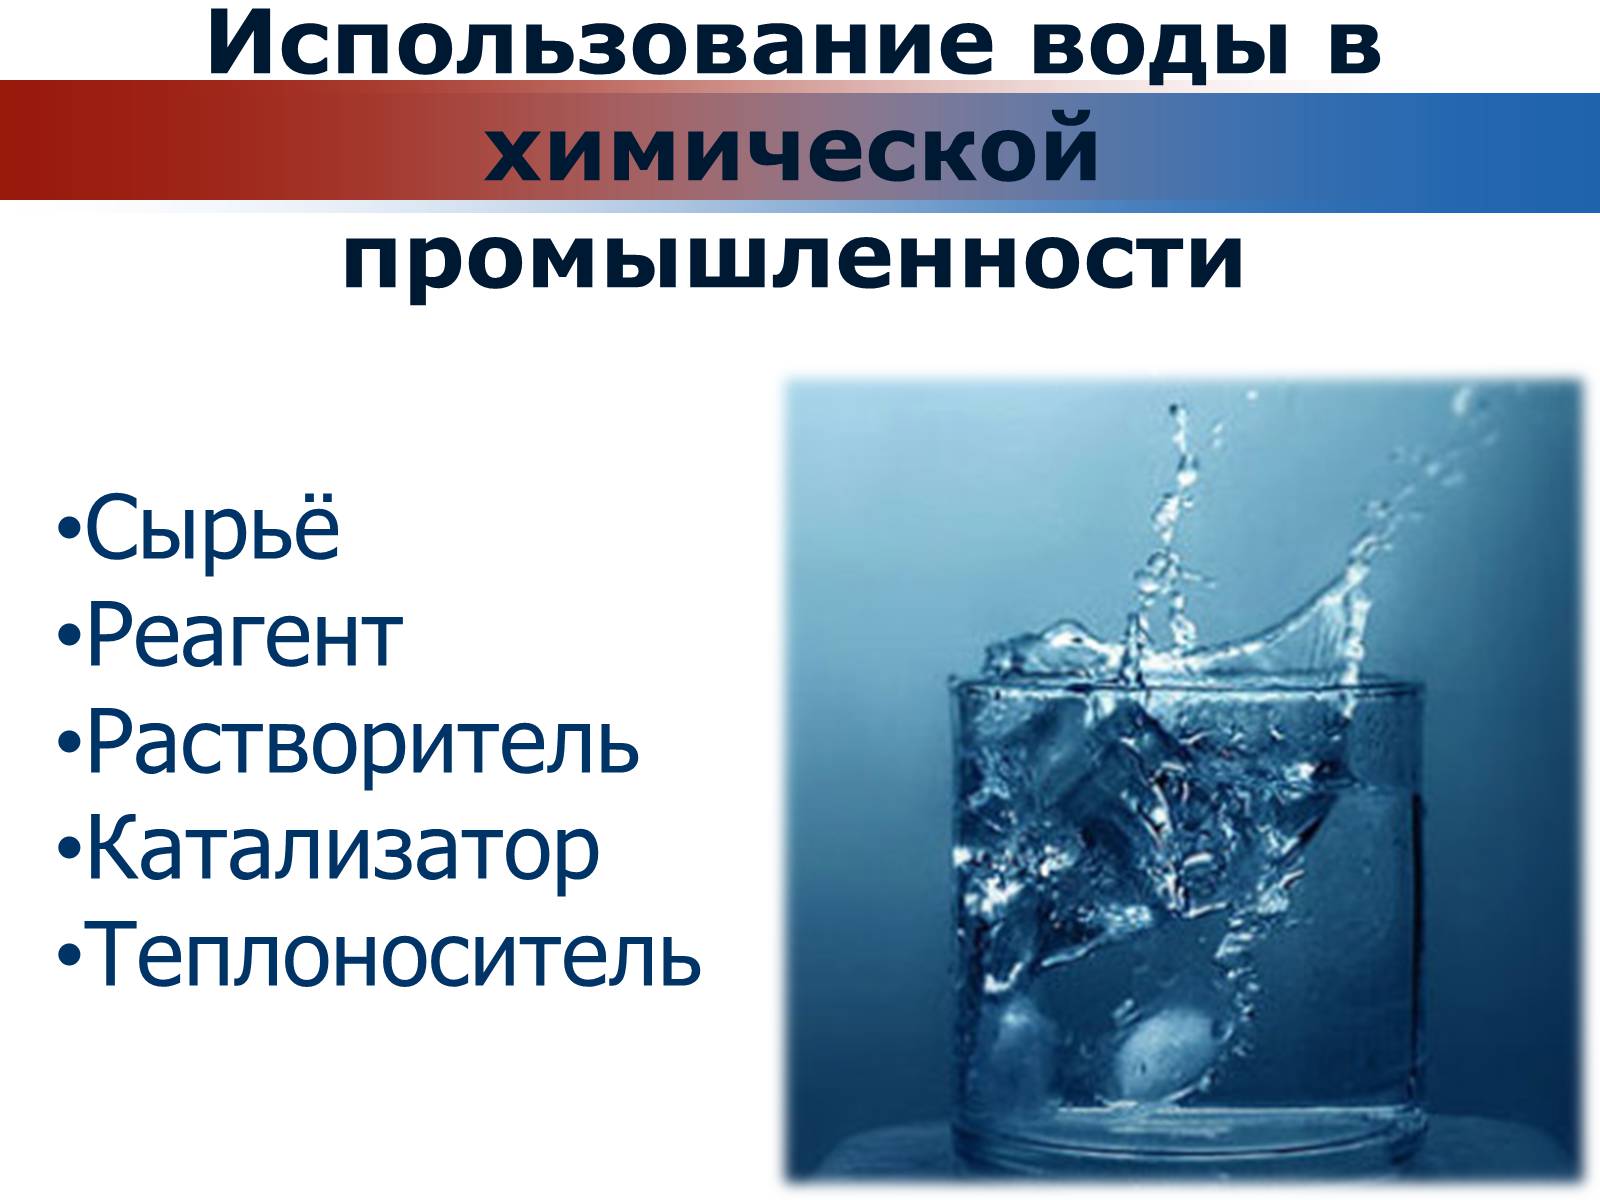 1 вода в промышленности. Вода в химической промышленности. Роль воды в промышленности. Вода в химическом производстве. Роль воды в химическом производстве.